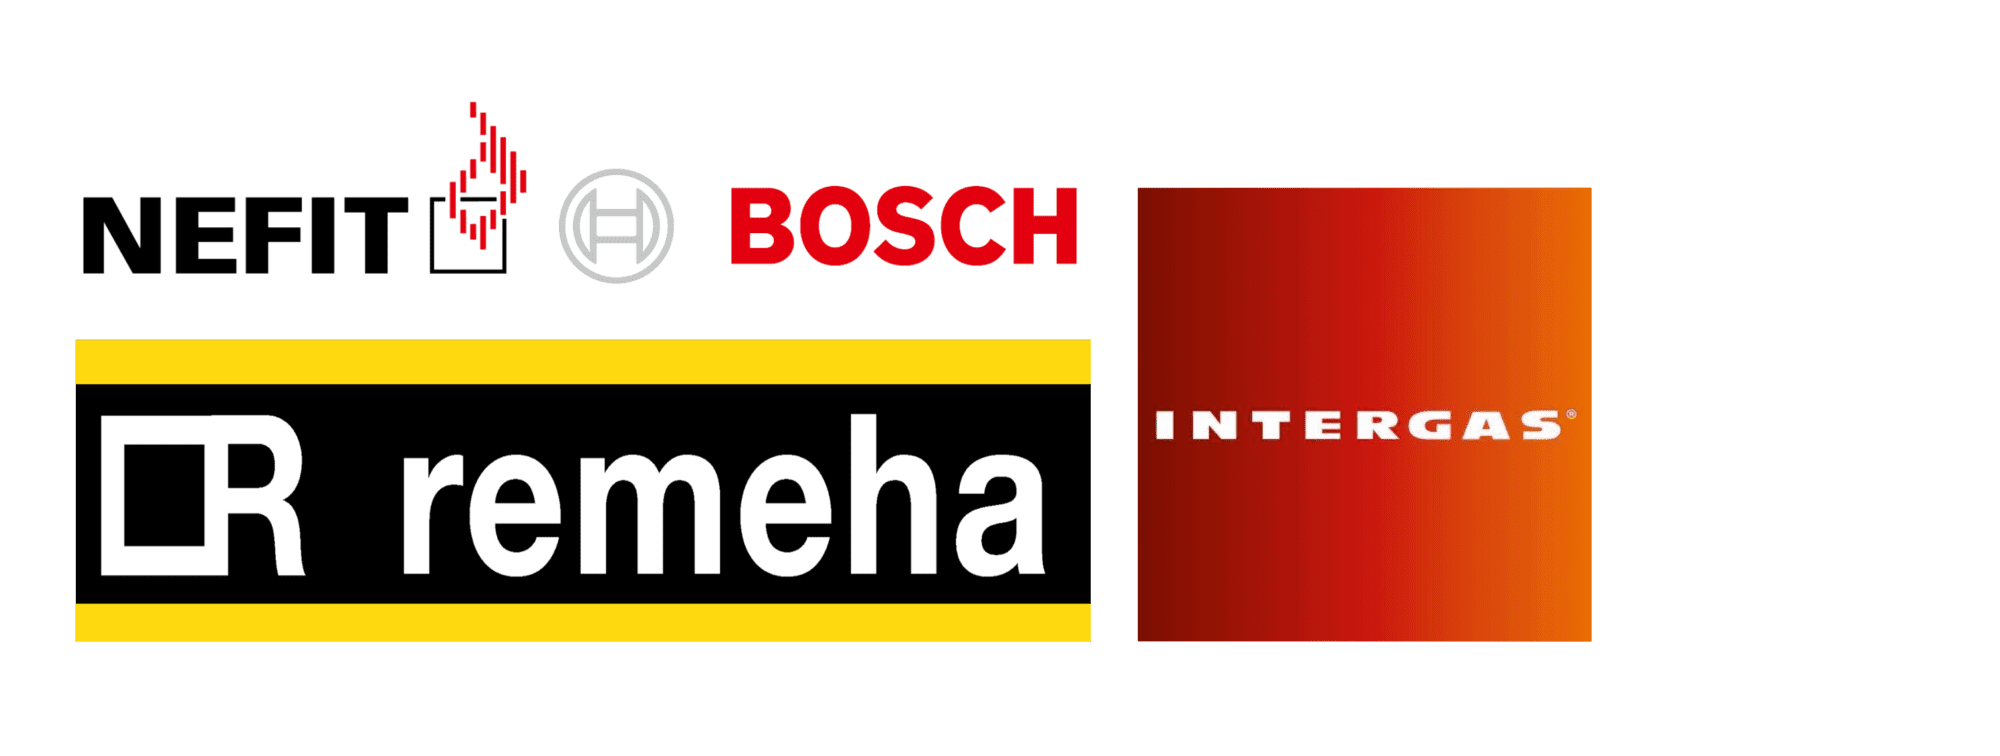 Nefit Bosch Remeha Intergas